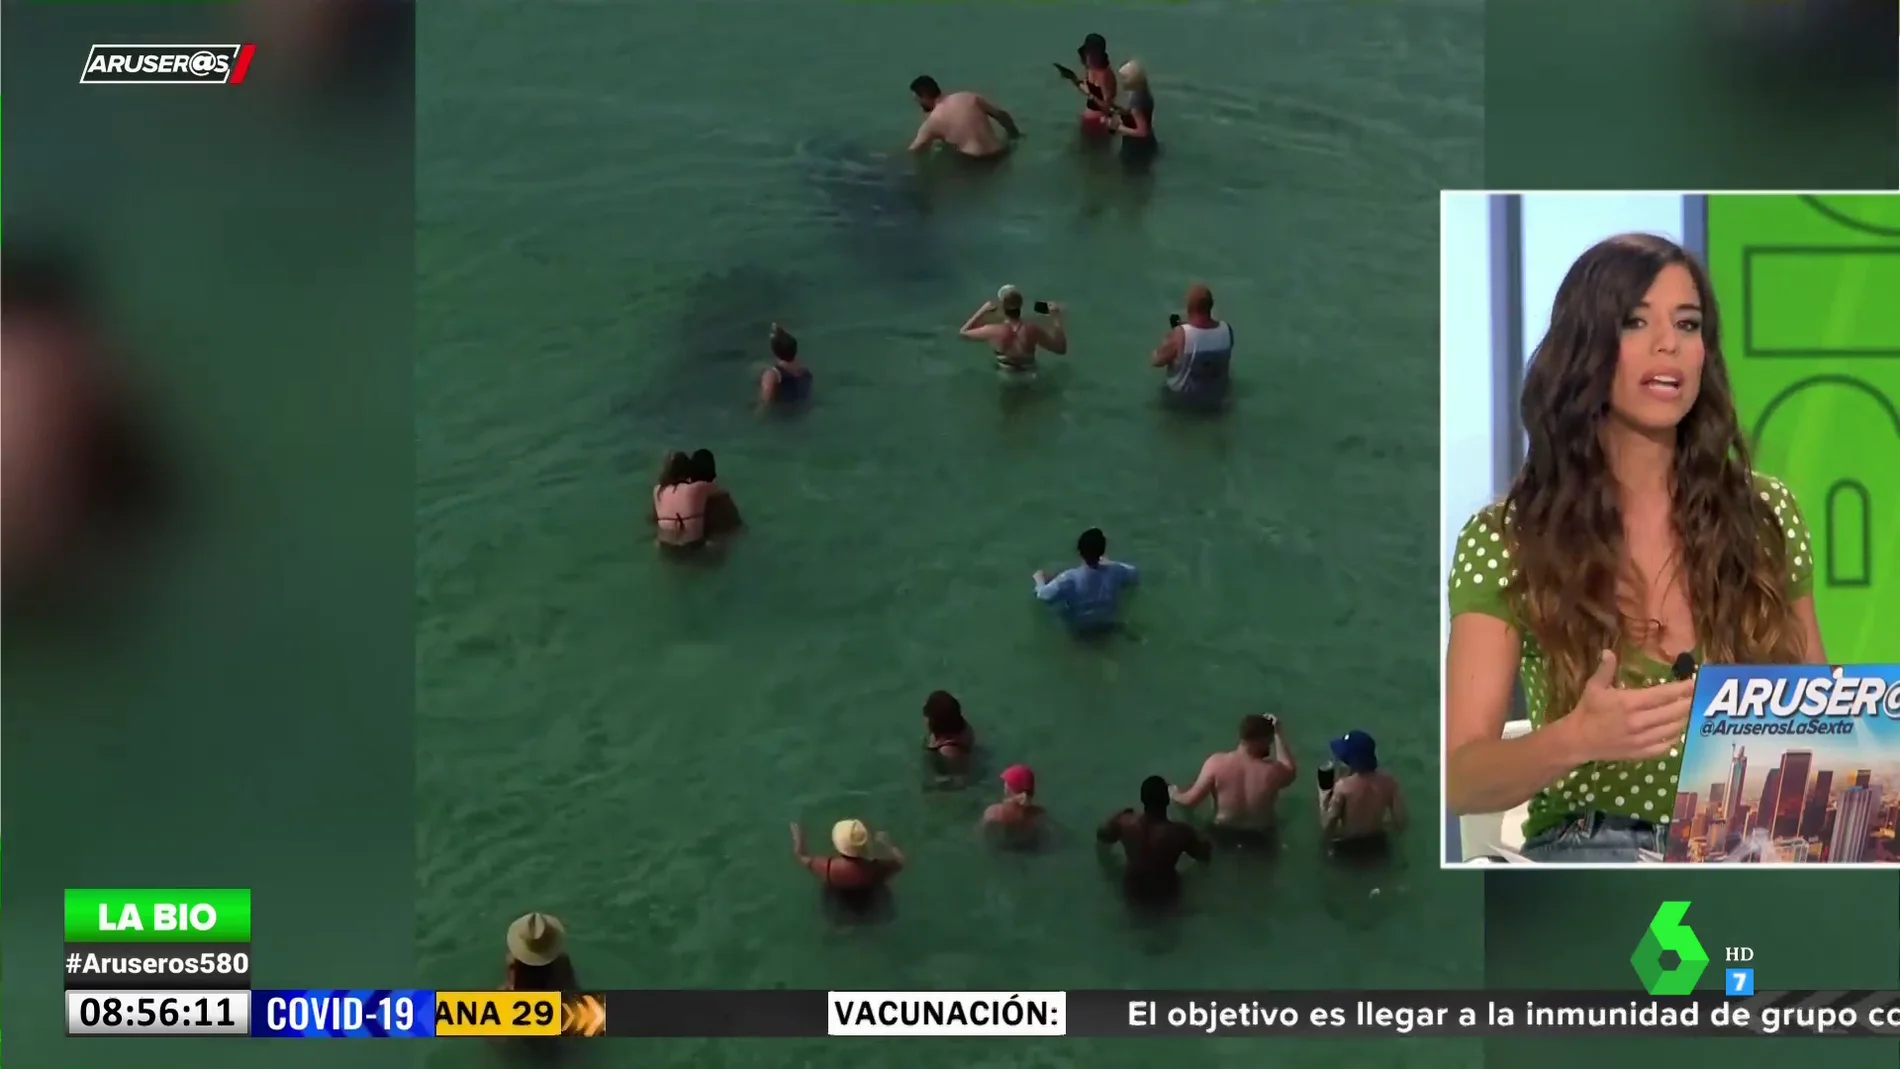 La bióloga Evelyn Segura advierte en Aruser@s sobre el peligro de nadar con algunos animales